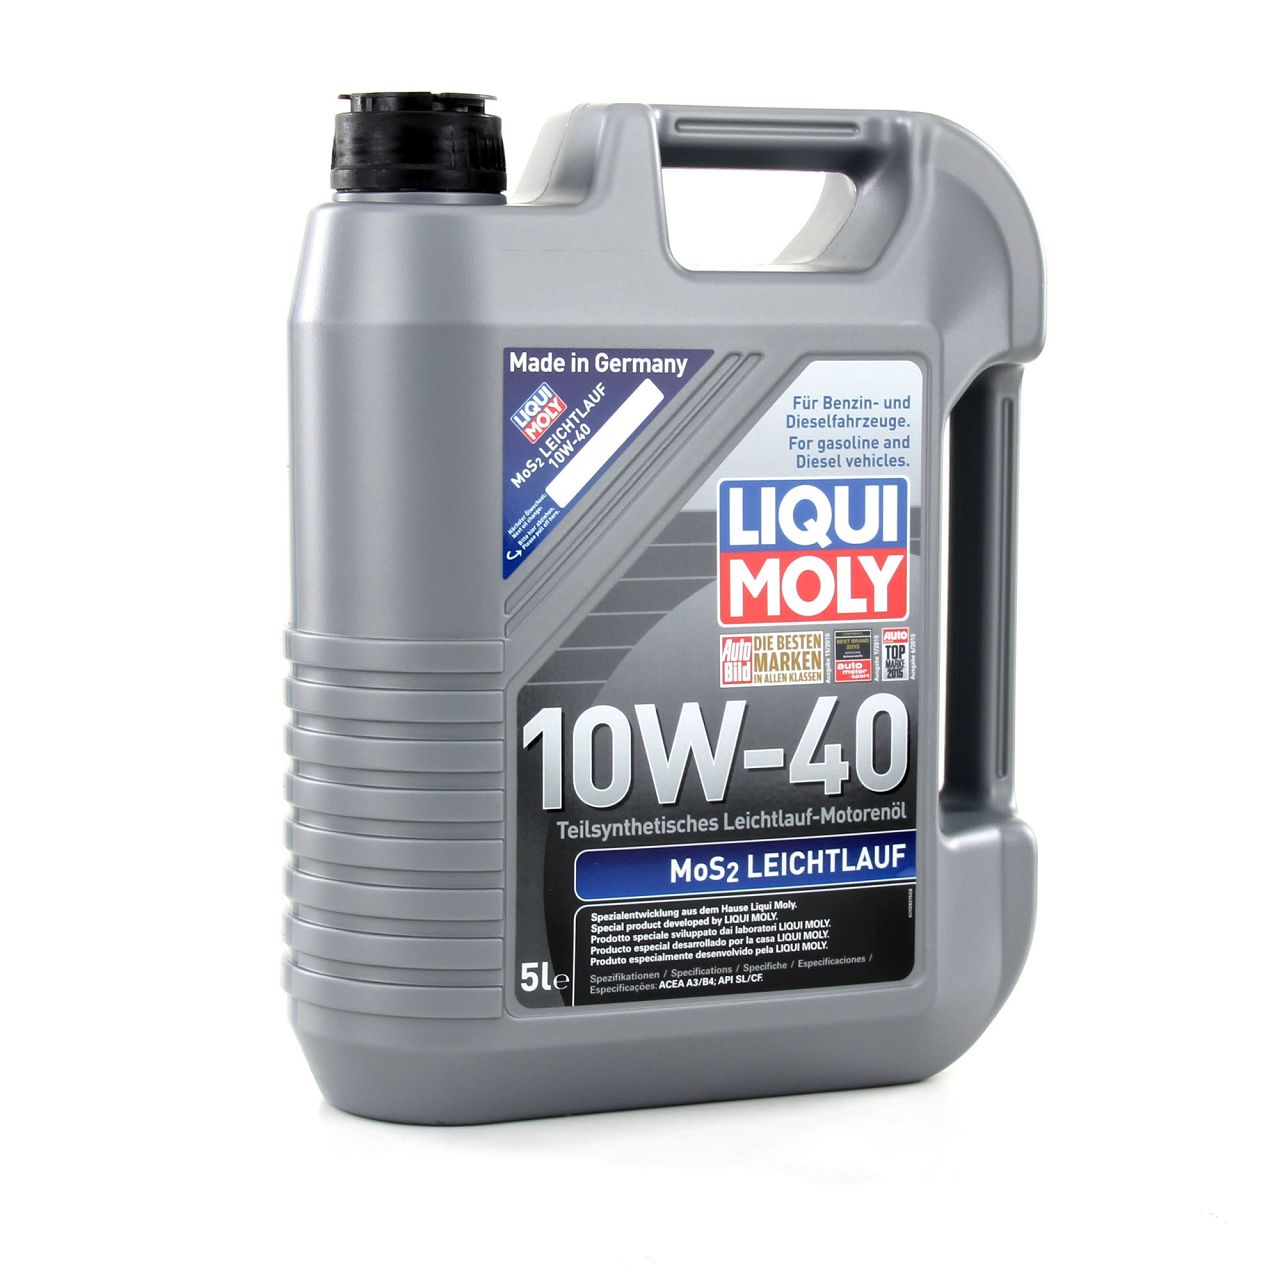 15L LIQUI MOLY 1092 MoS2 LEICHTLAUF 10W-40 10W40 Motoröl Öl ACEA A3/B4 API SL/CF